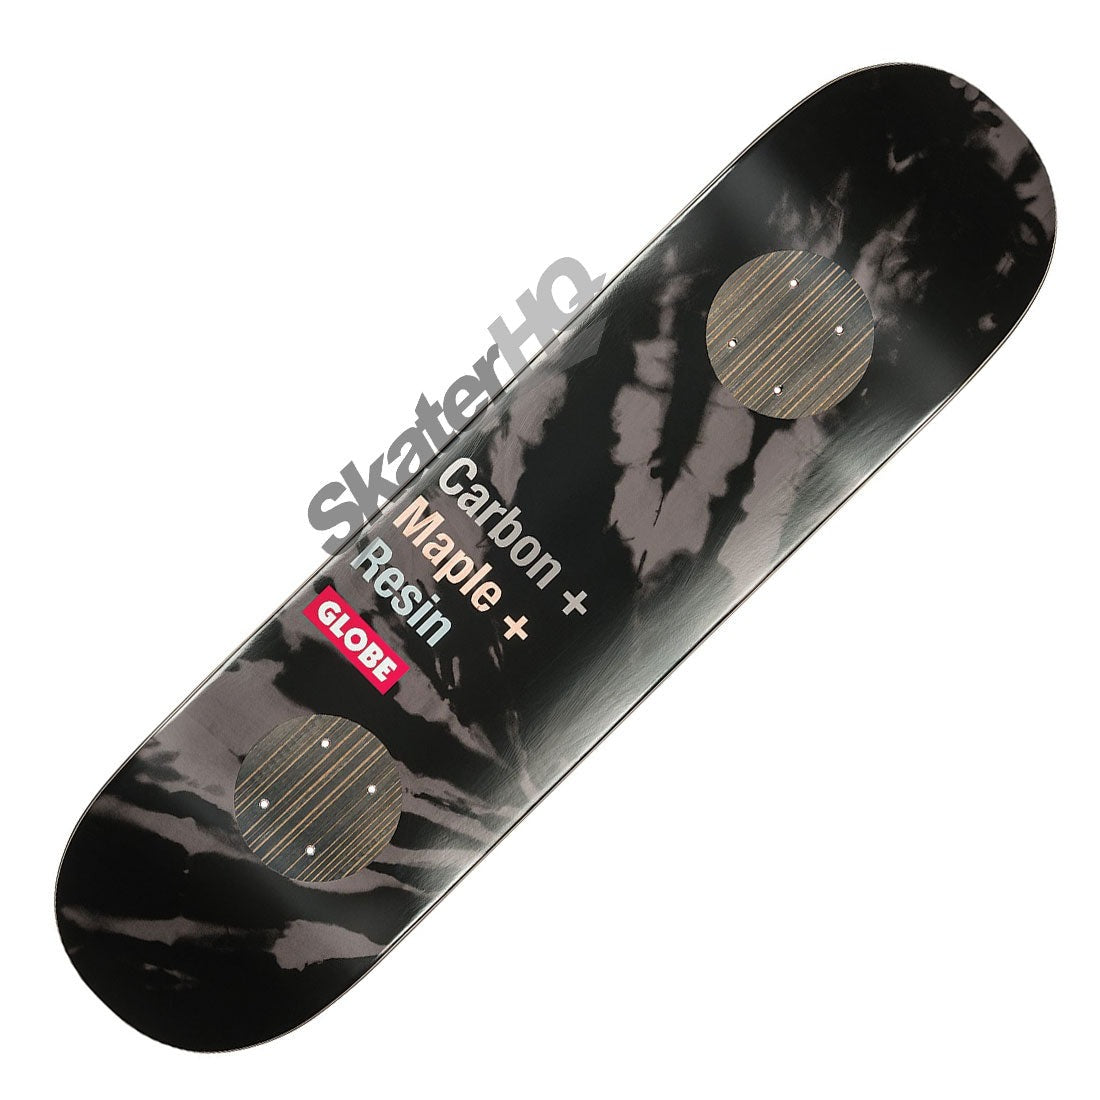 Globe G3 Bar 8.0 Deck - Impact/Black Dye Skateboard Decks Modern Street